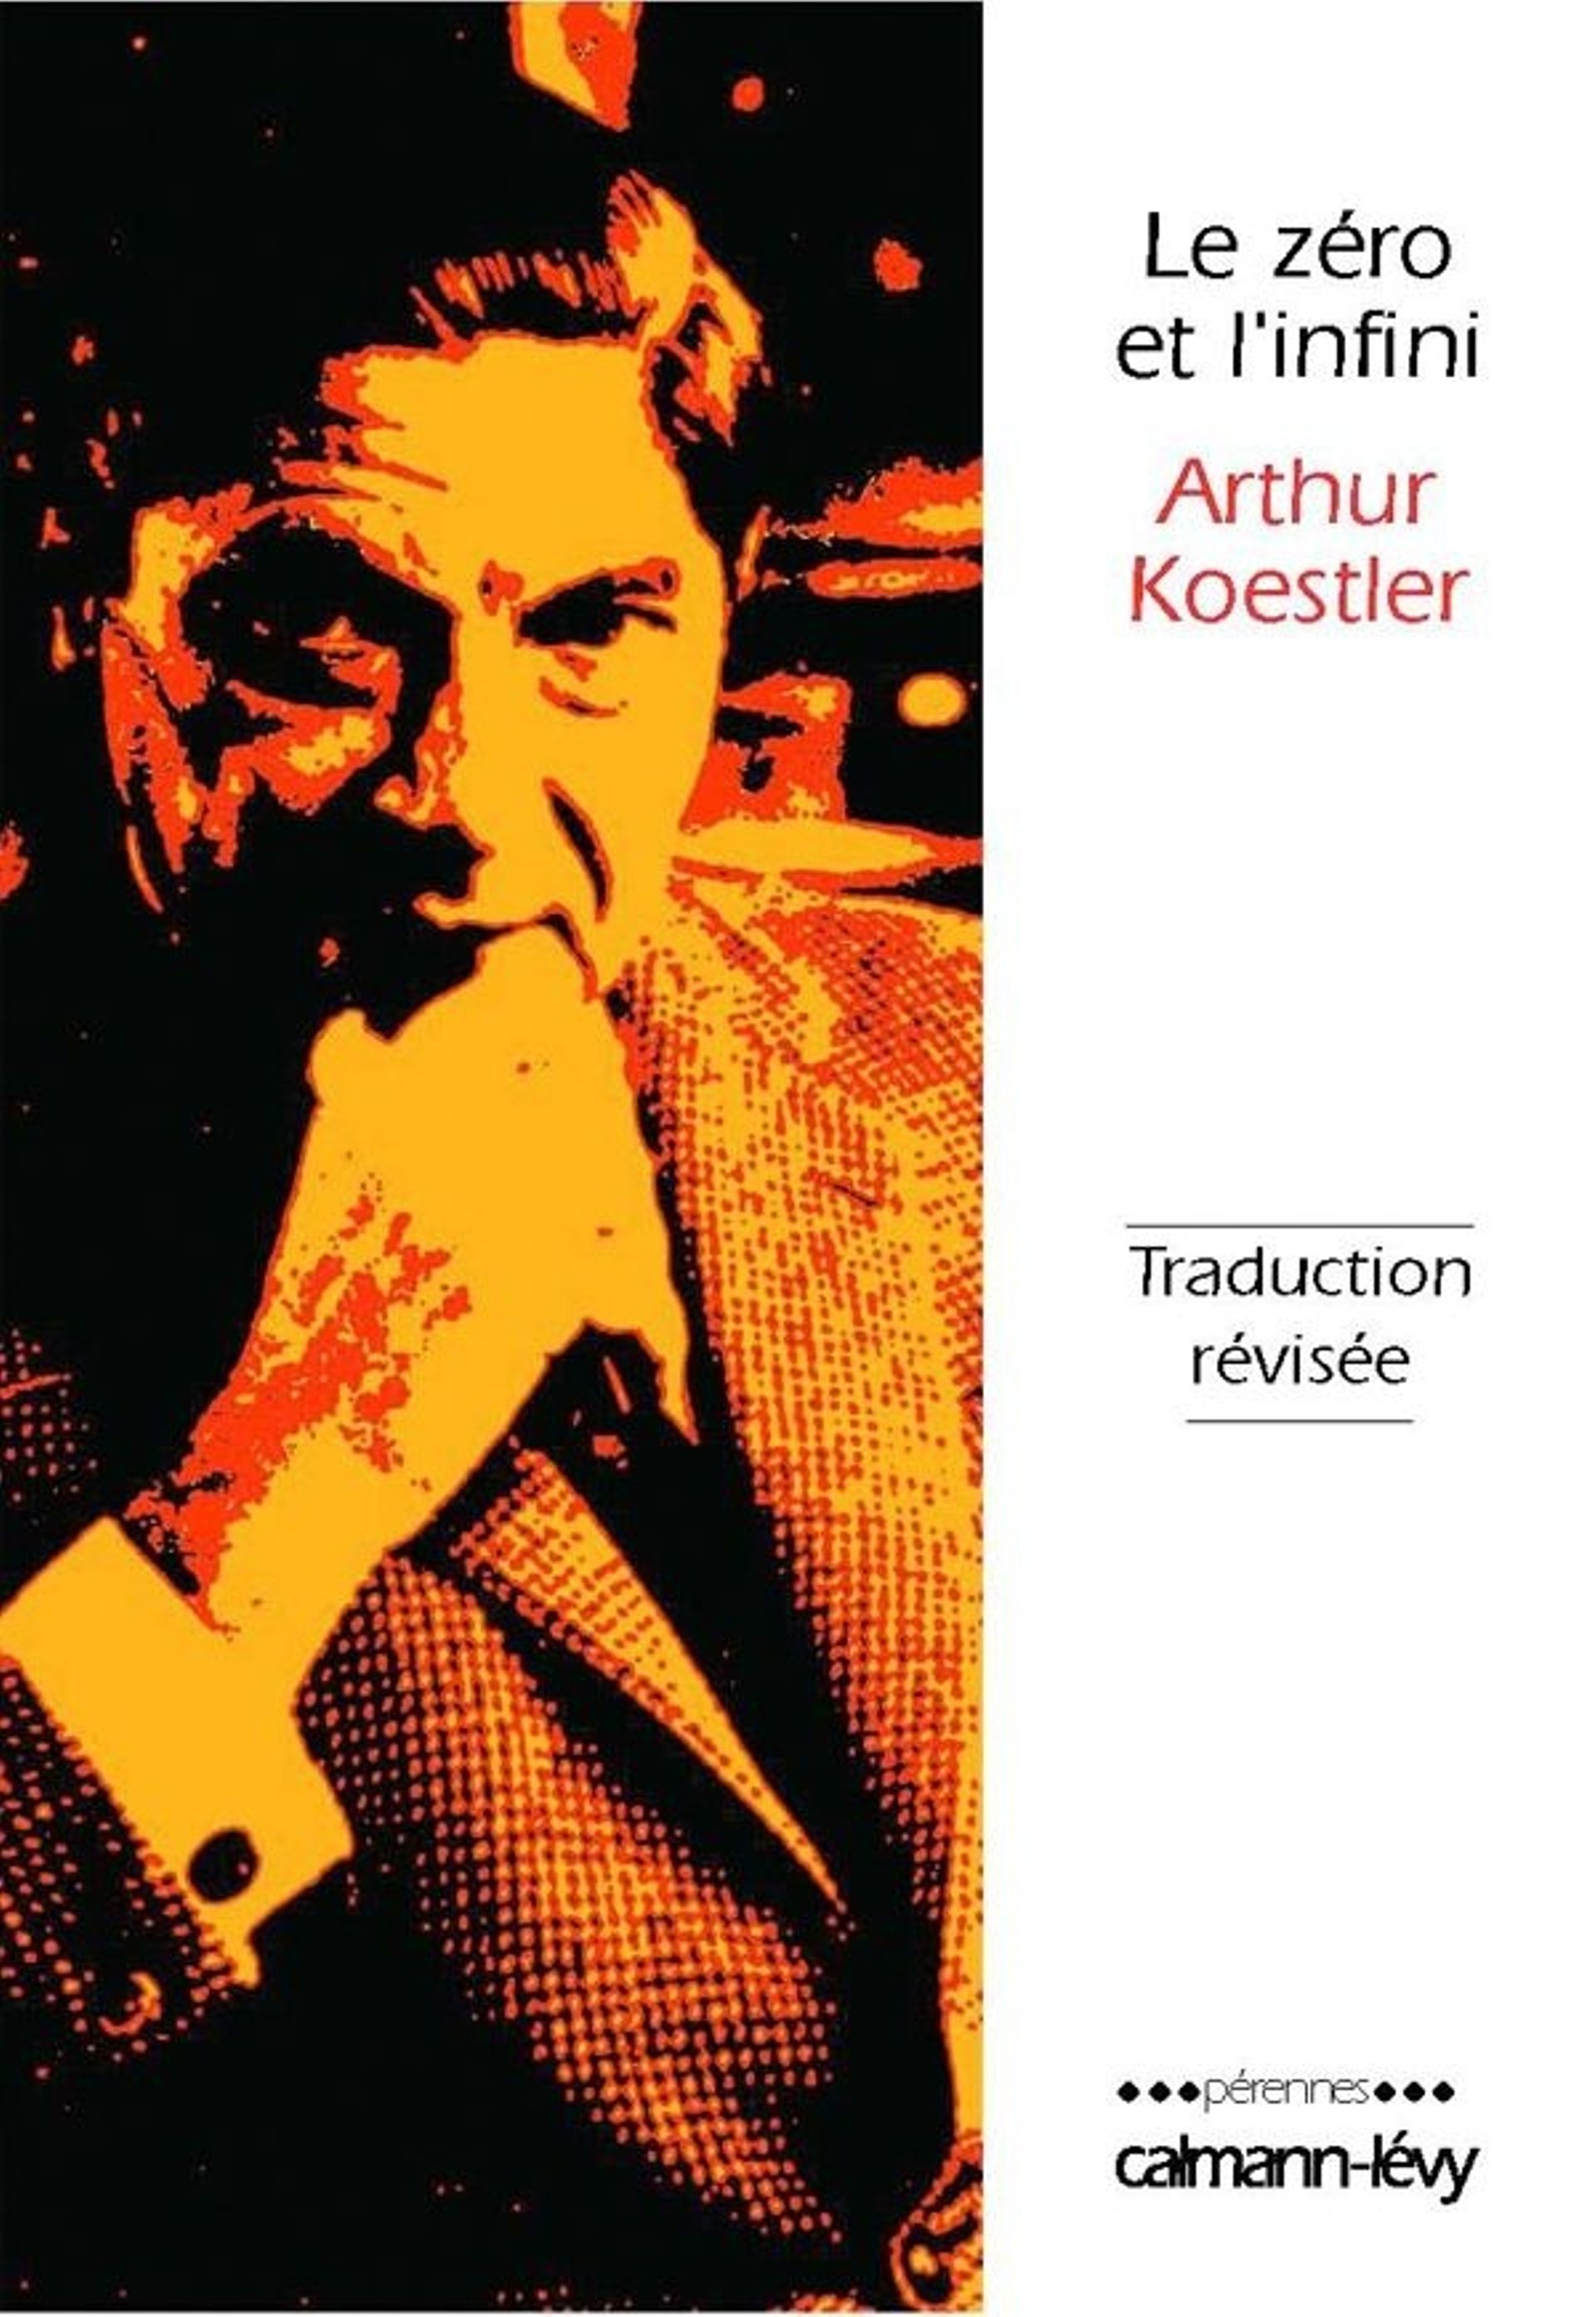 Calmann-Lévy publie en septembre 2022 une nouvelle traductiopn du roman "Le Zéro et l'Infini" d'Arthur Koestler.